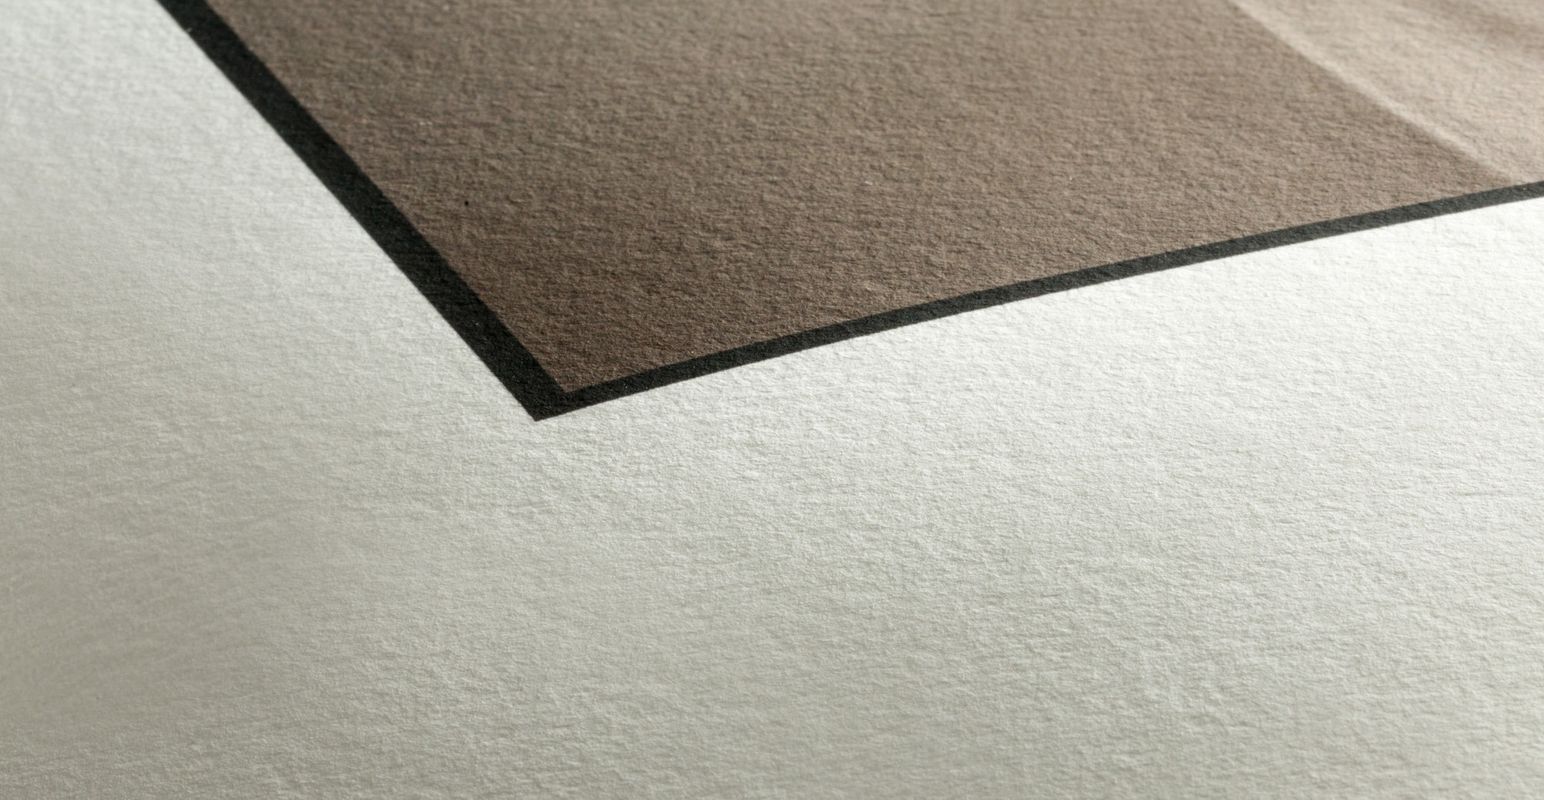 60lb. Paper Canvas